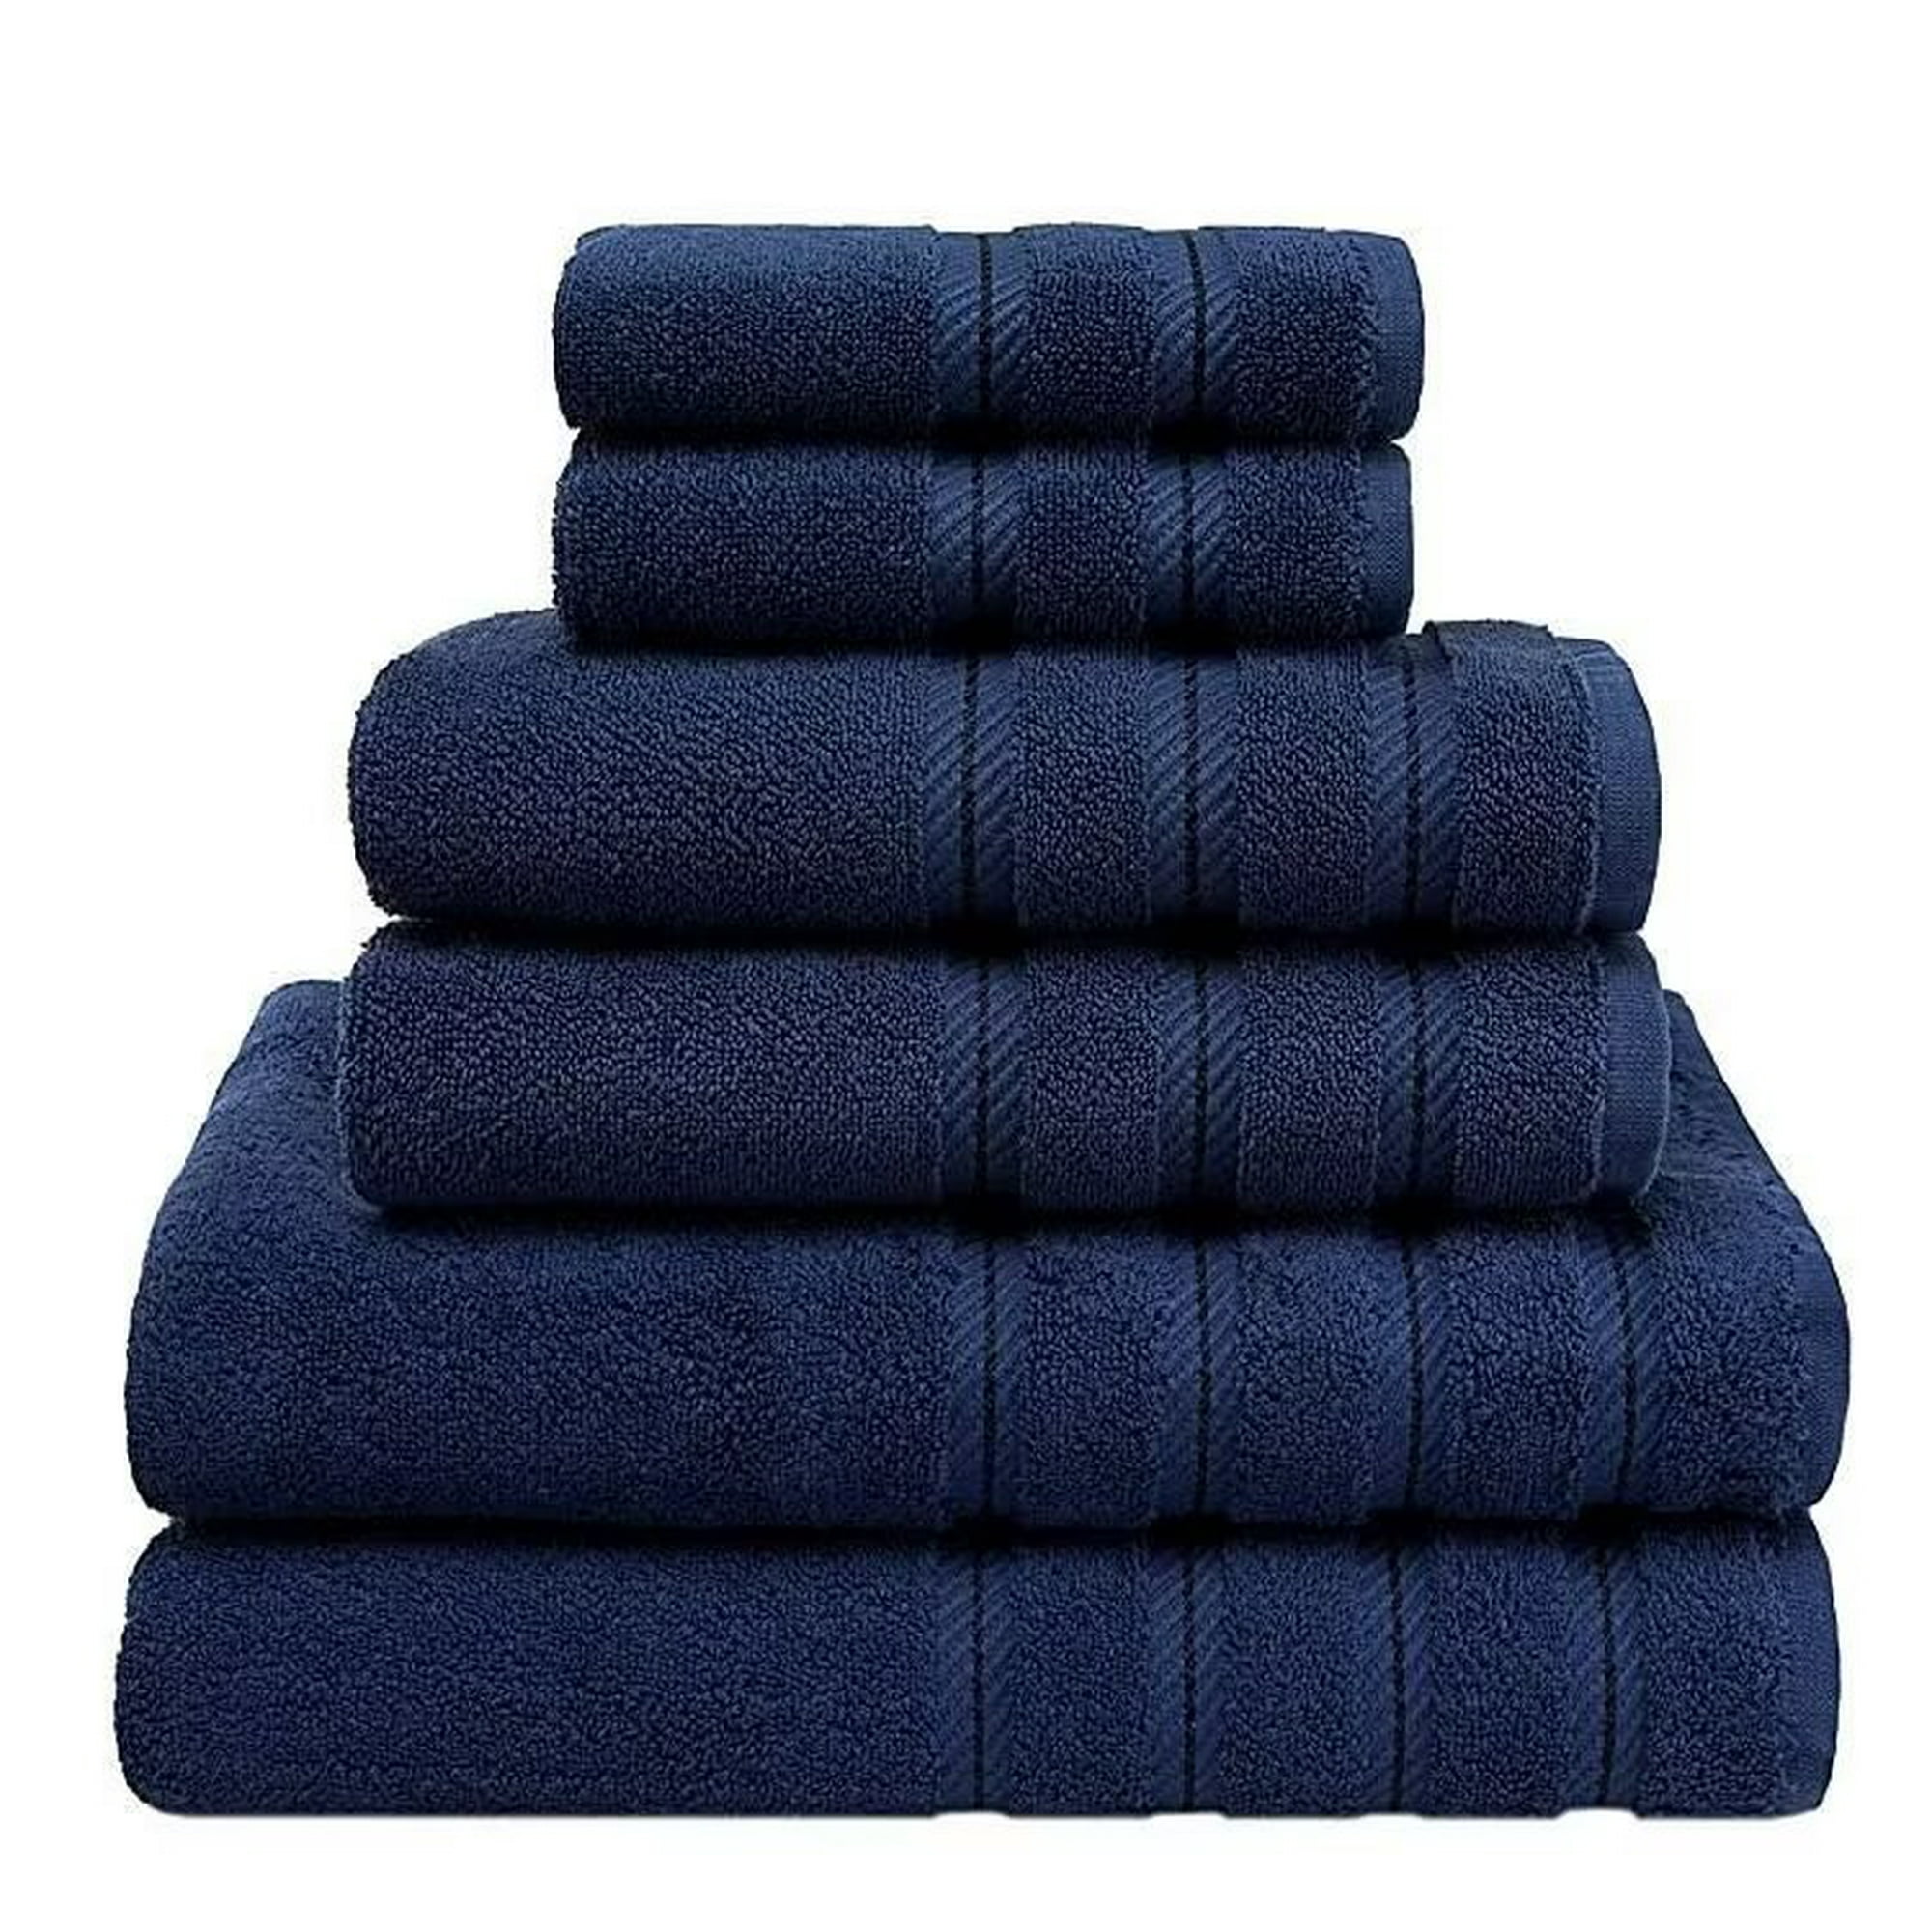 Juego de toallas de 6 piezas de algodón turco absorbentes y suaves